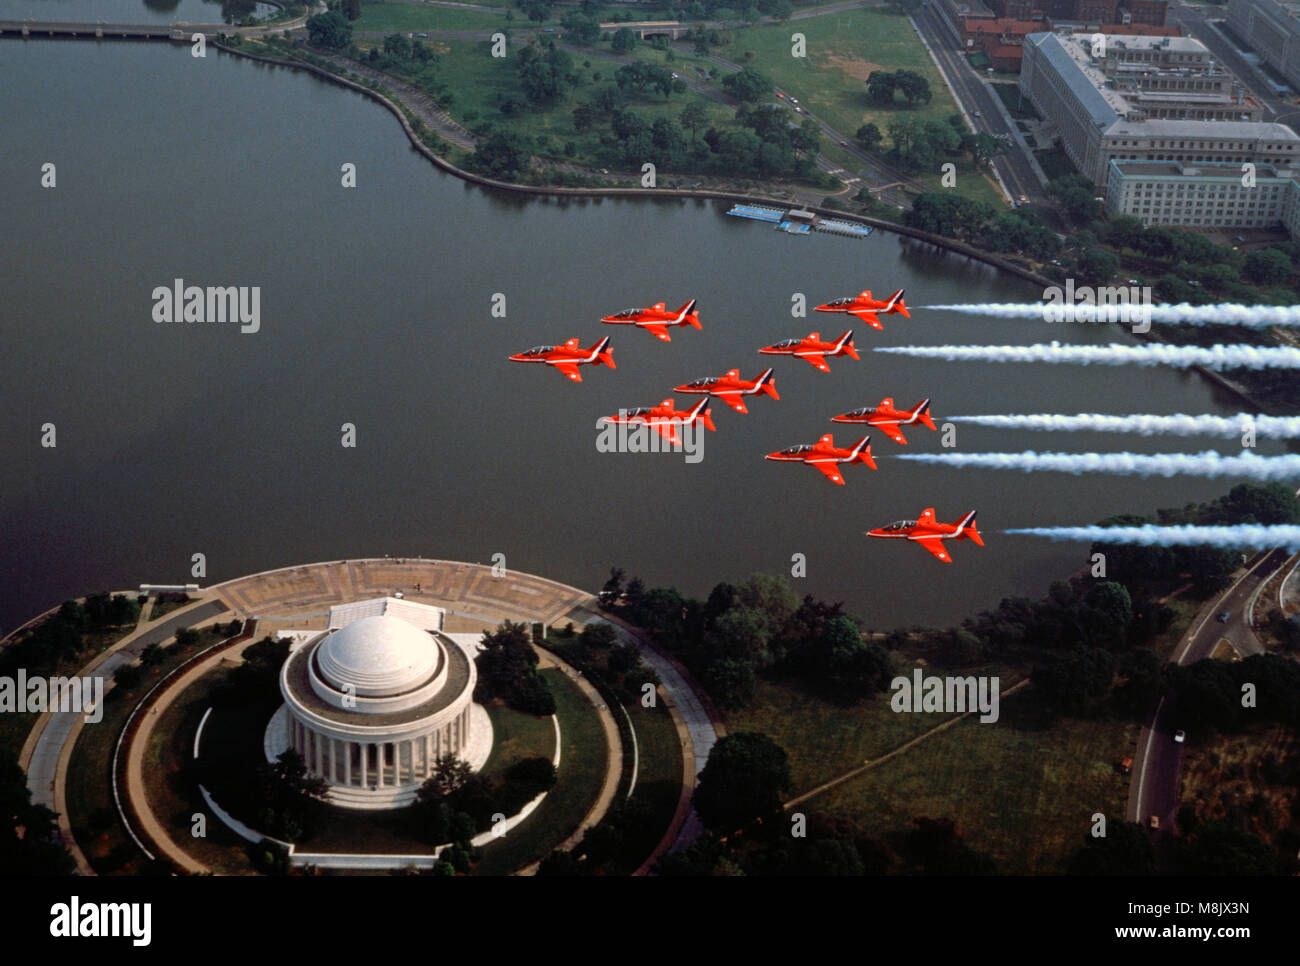 Las flechas rojas ( el acrobático mostrar equipo de la Royal Air Force) que sobrevolaba el Jefferson Memorial, Washington D.C., EE.UU. Foto de stock